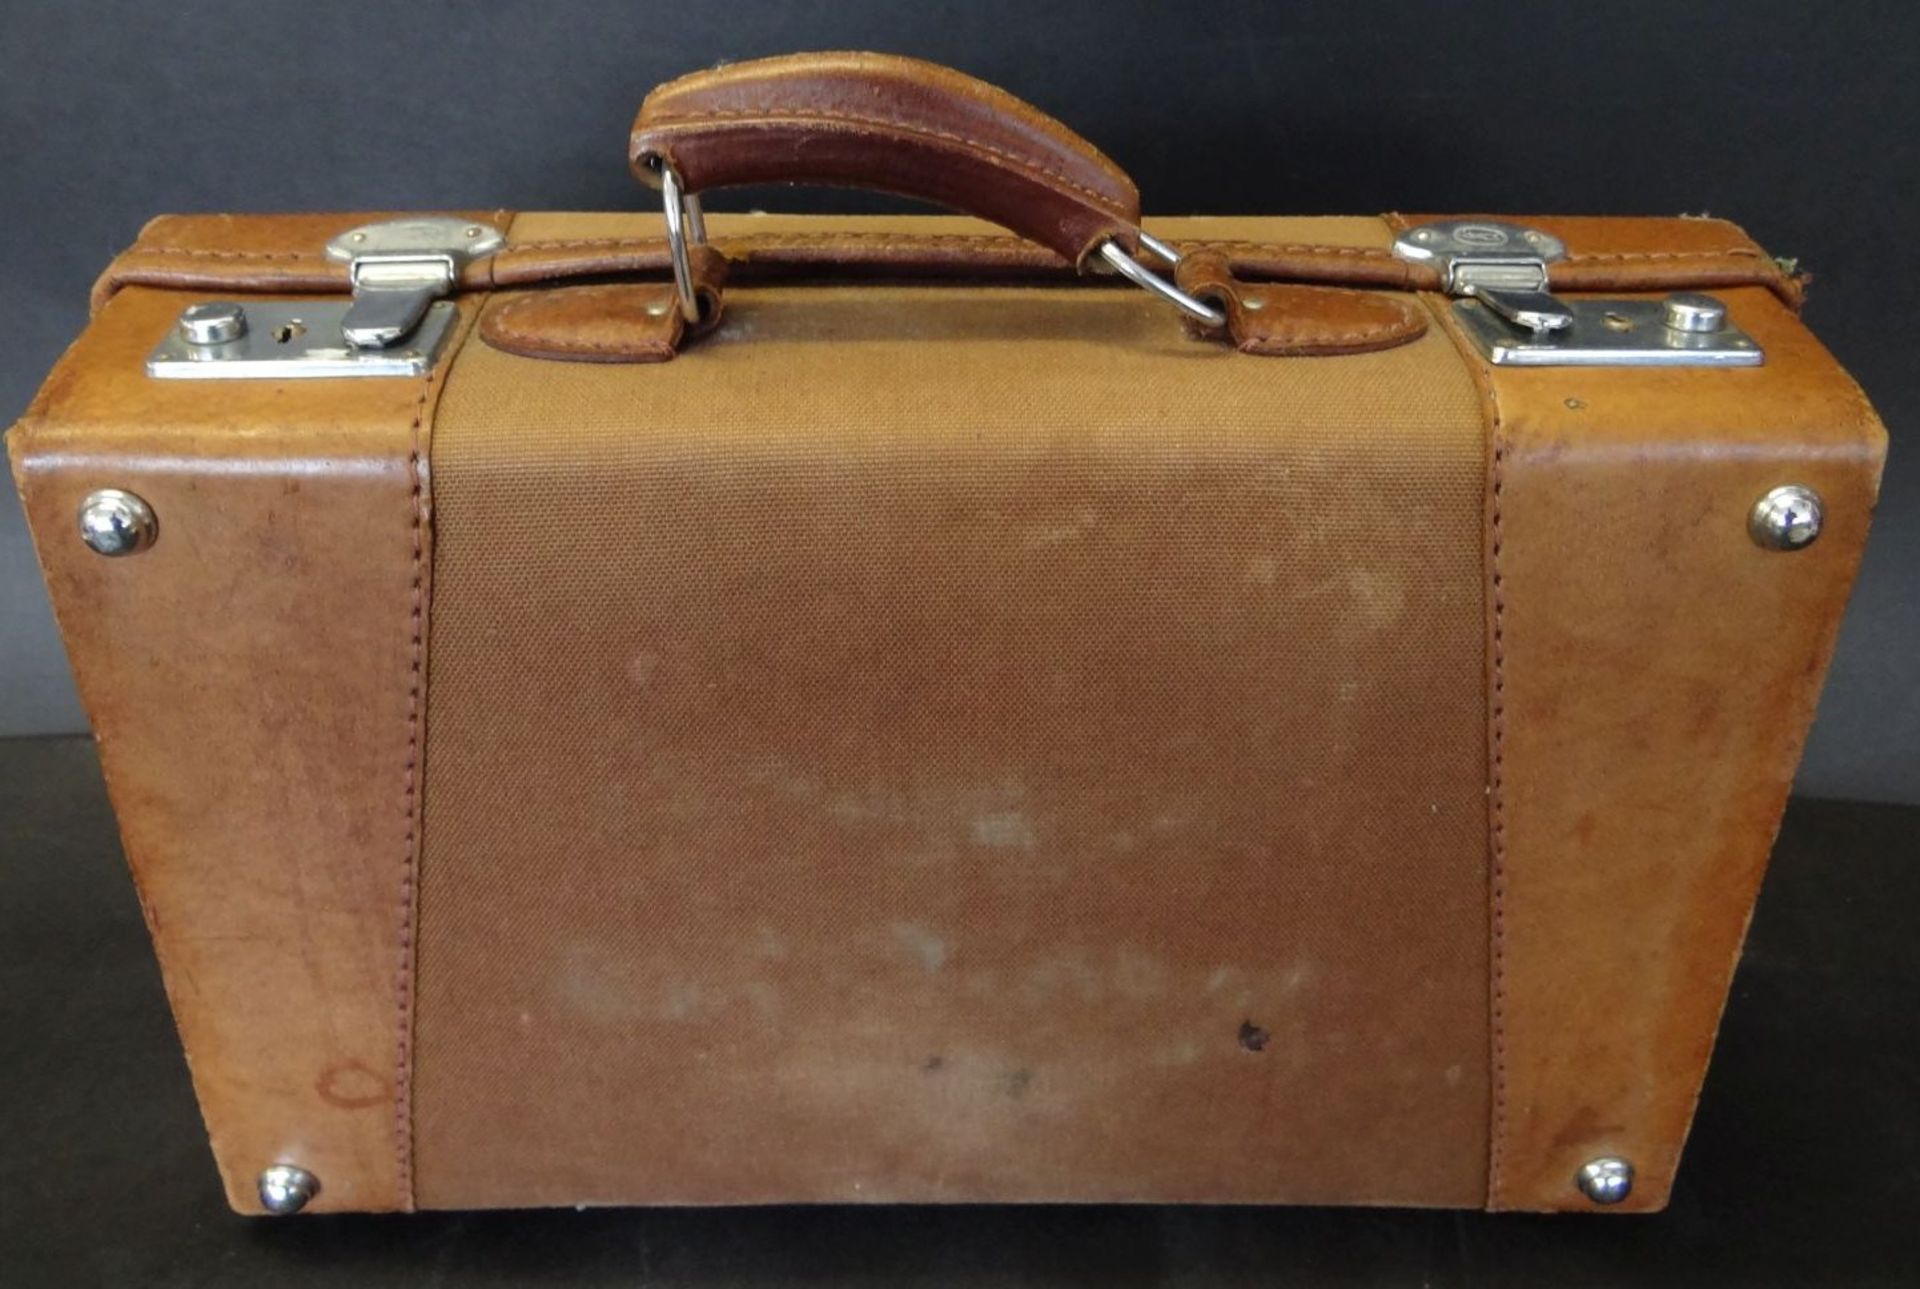 kl. Leder-Handkoffer "Ann Christin", mttiig Stoff, 36x24 cm, Alters-u. Gebrauchsspuren - Bild 5 aus 5